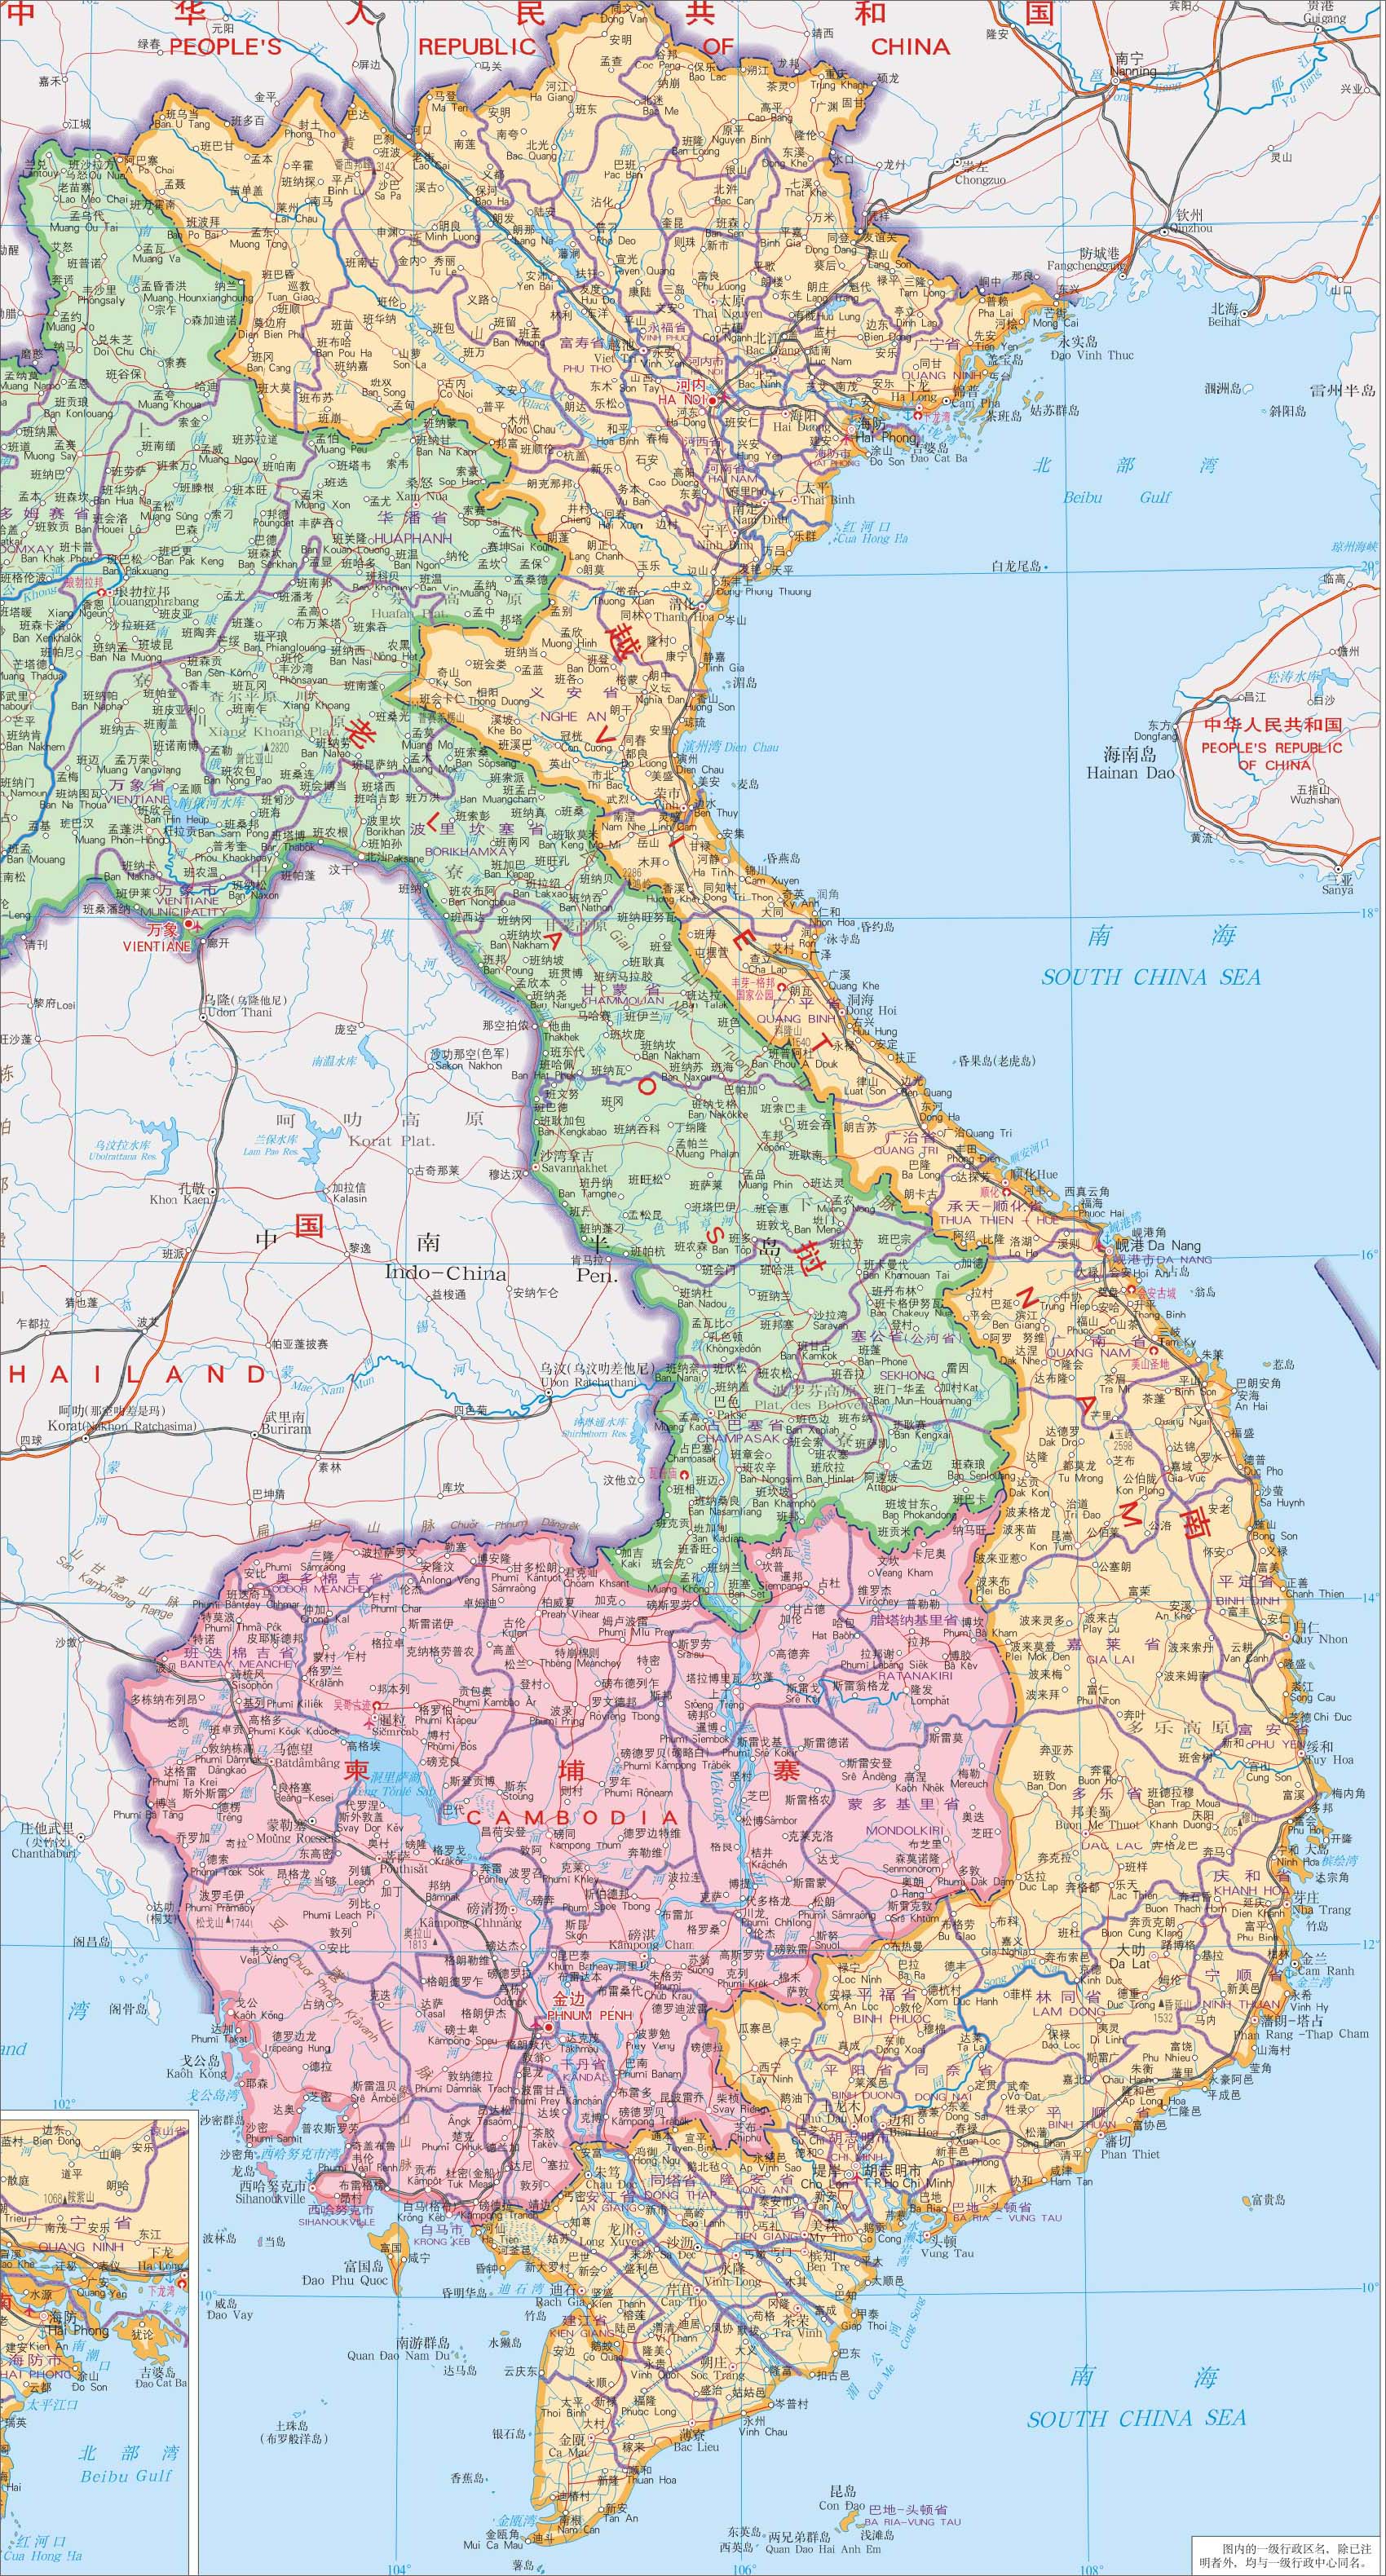 上一幅地图: 没有了 | 越南 | 下一幅地图: 河内地图